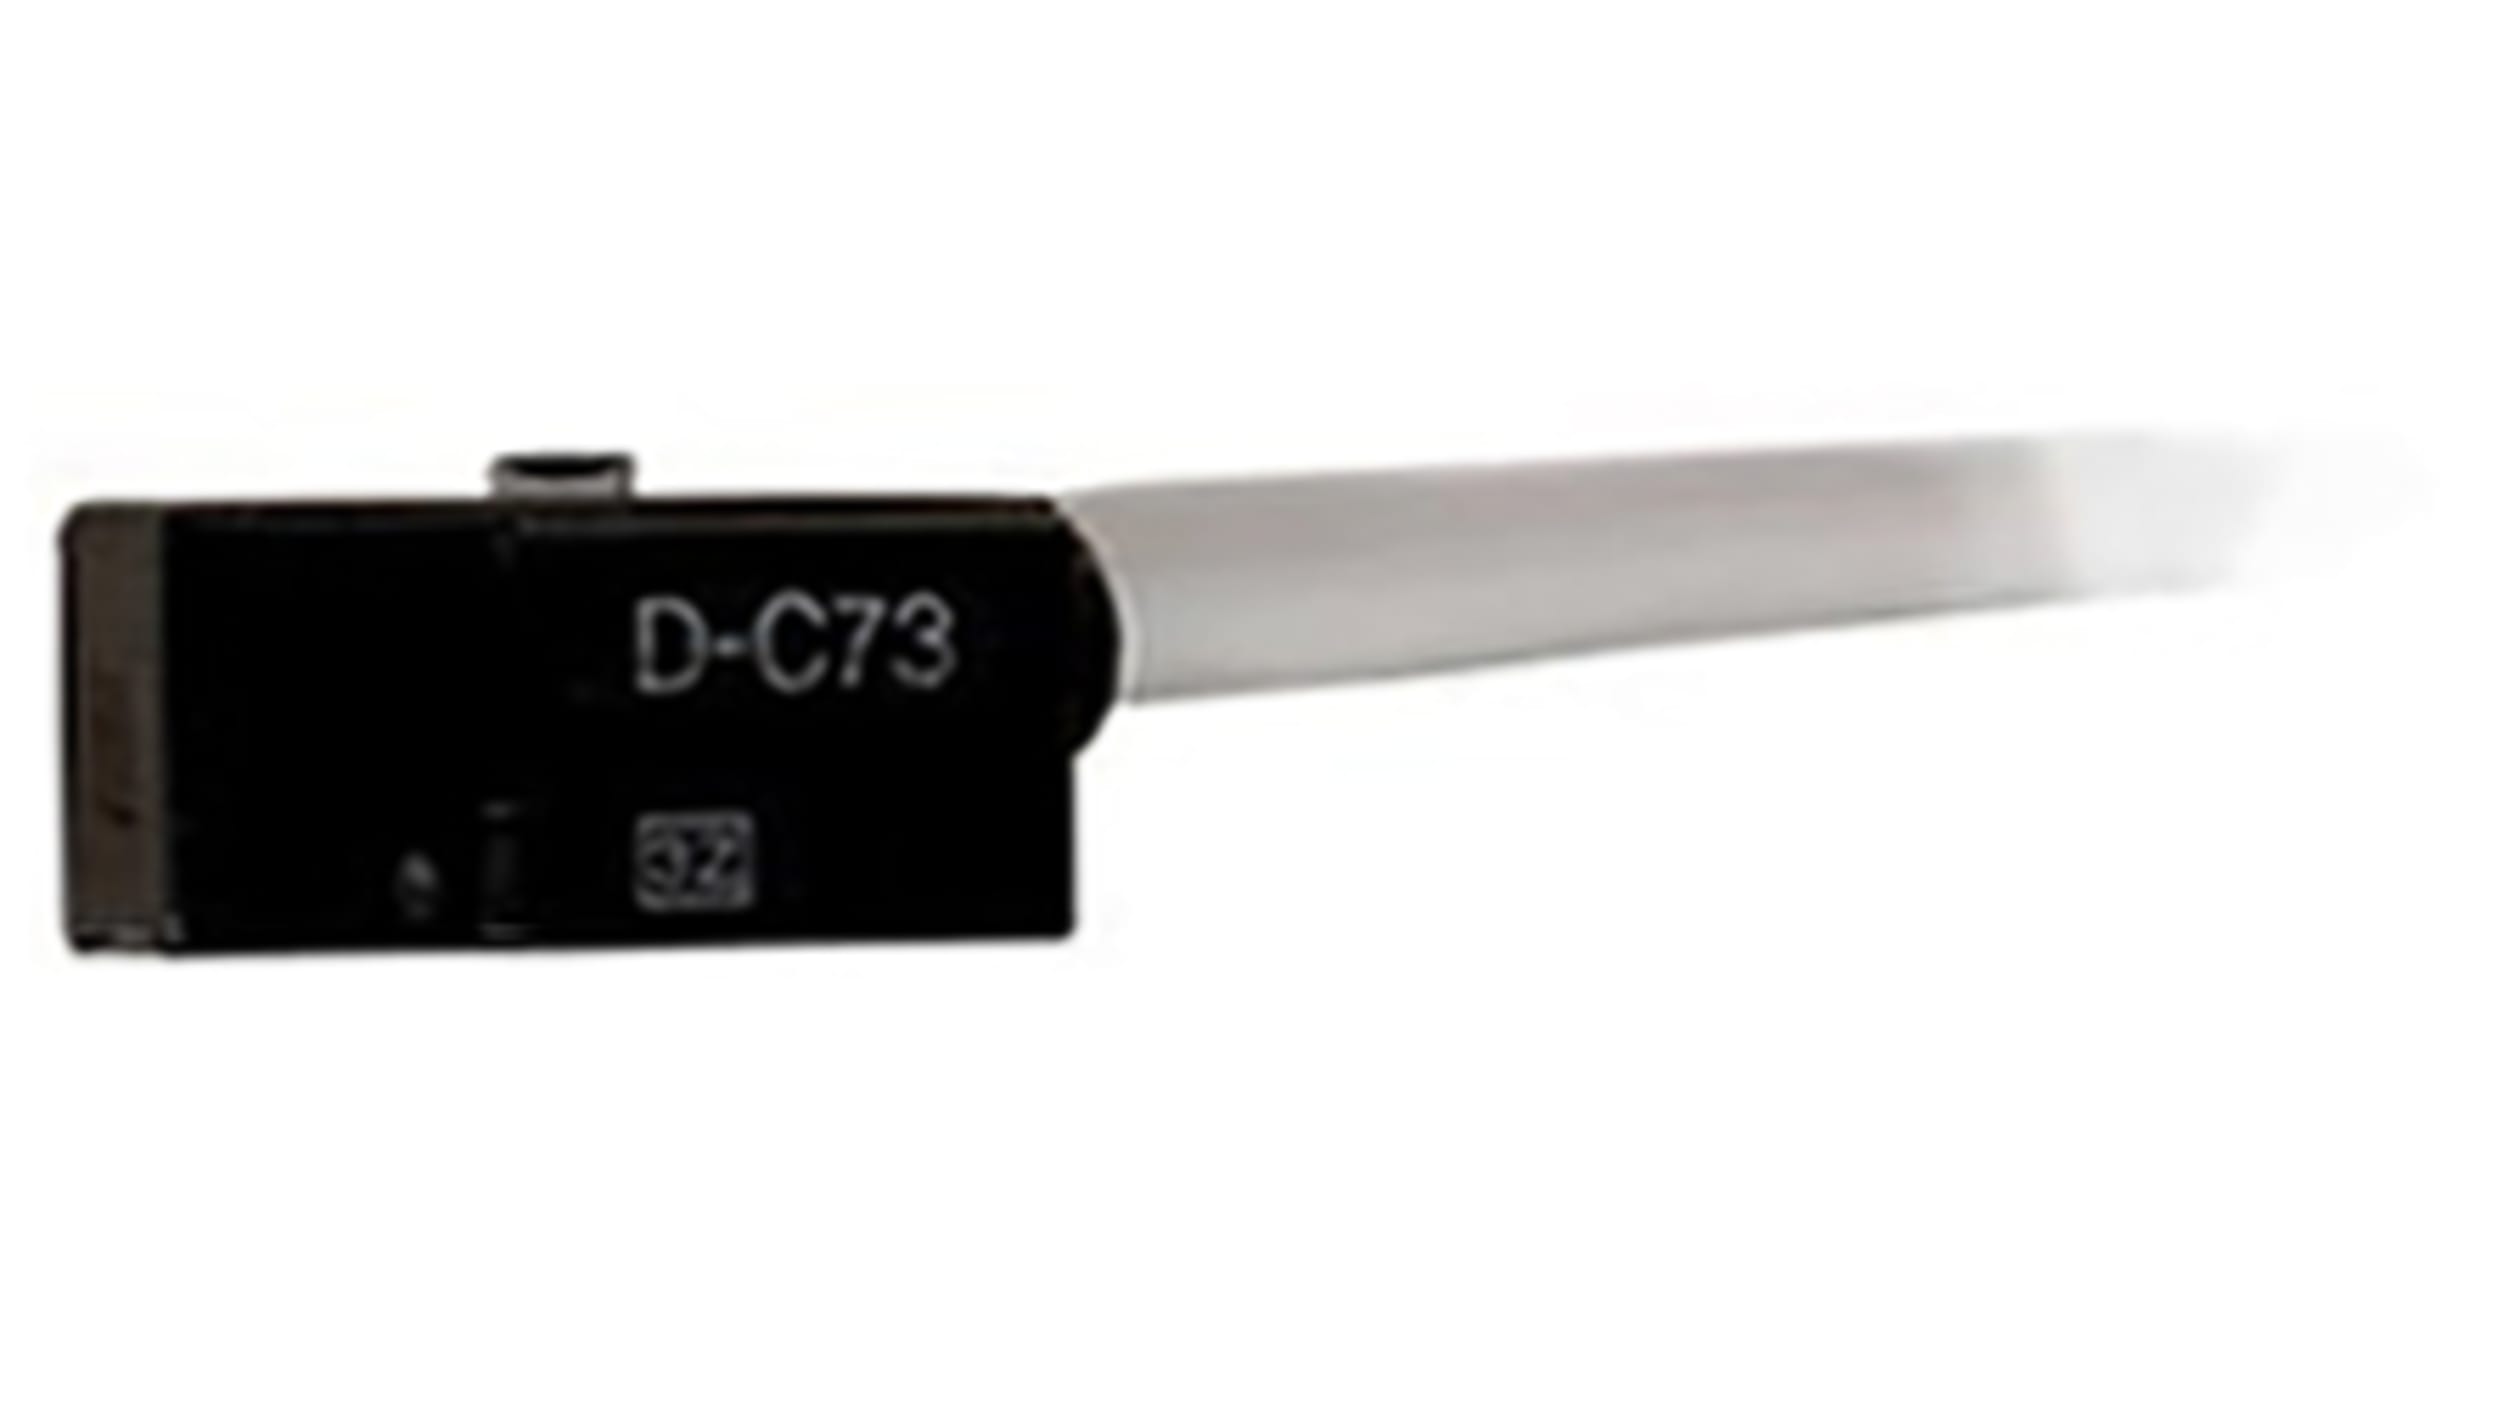 D-A73SAPC | 空圧センサ SMC D-A73シリーズ | RS